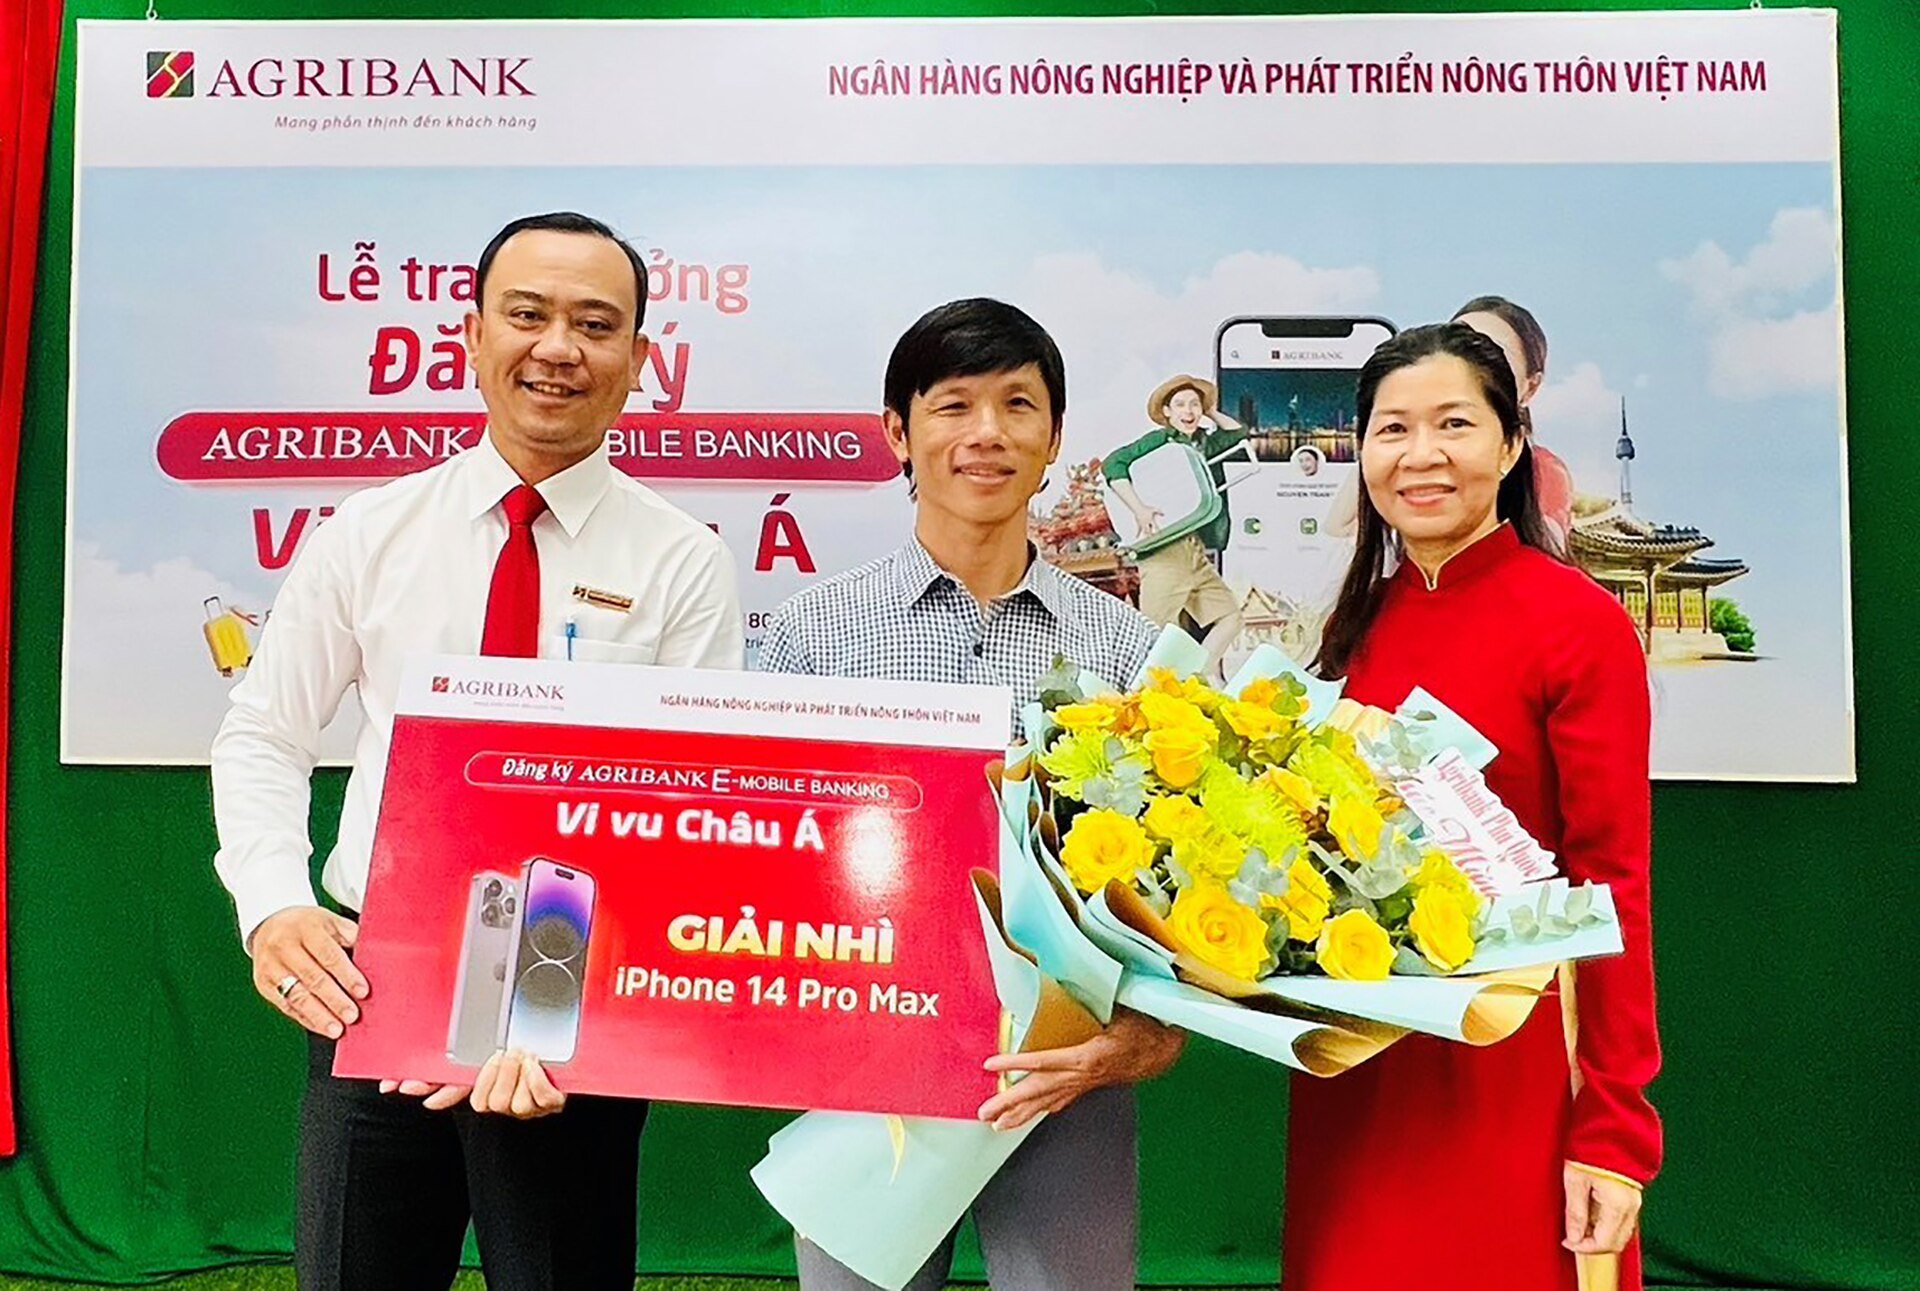 Đại diện Agribank trao giải nhì cho anh Nguyễn Tấn Thành (Phú Quốc)